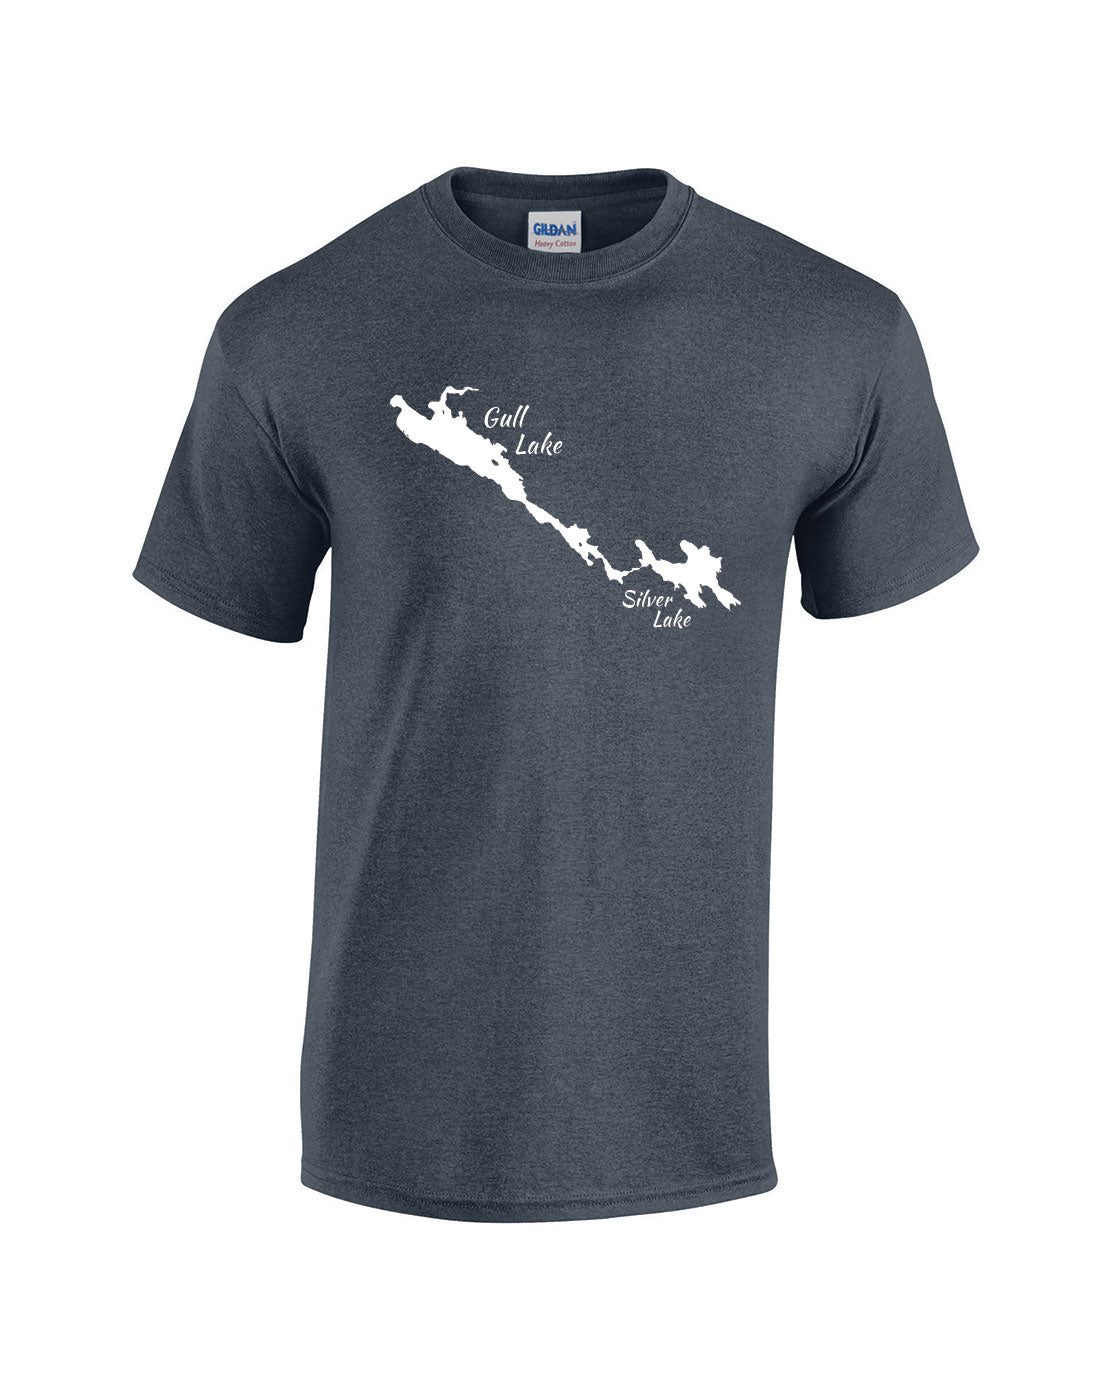 Gull Lake T-Shirt